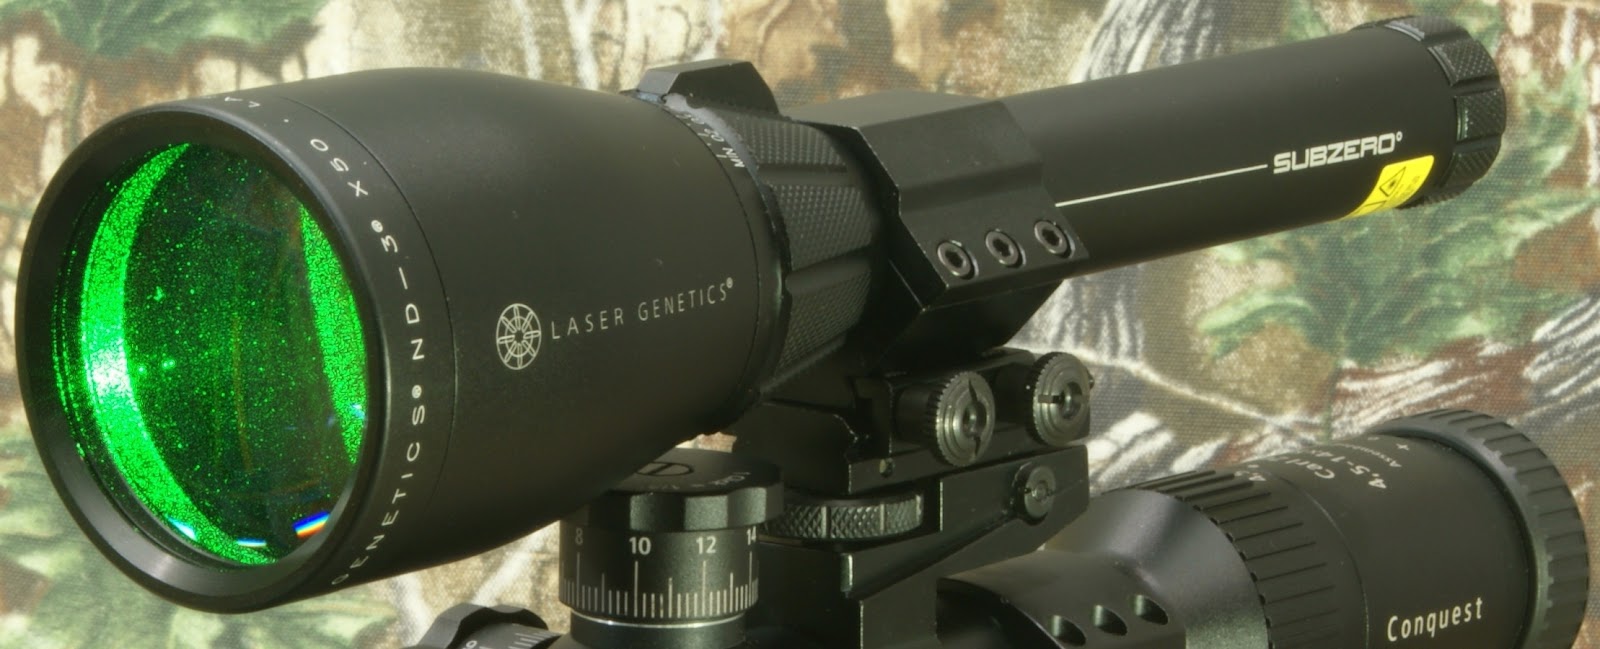 Лазерный фонарь BSA Laser Genetics ND3х50 SubZero - превращает винтовку охо